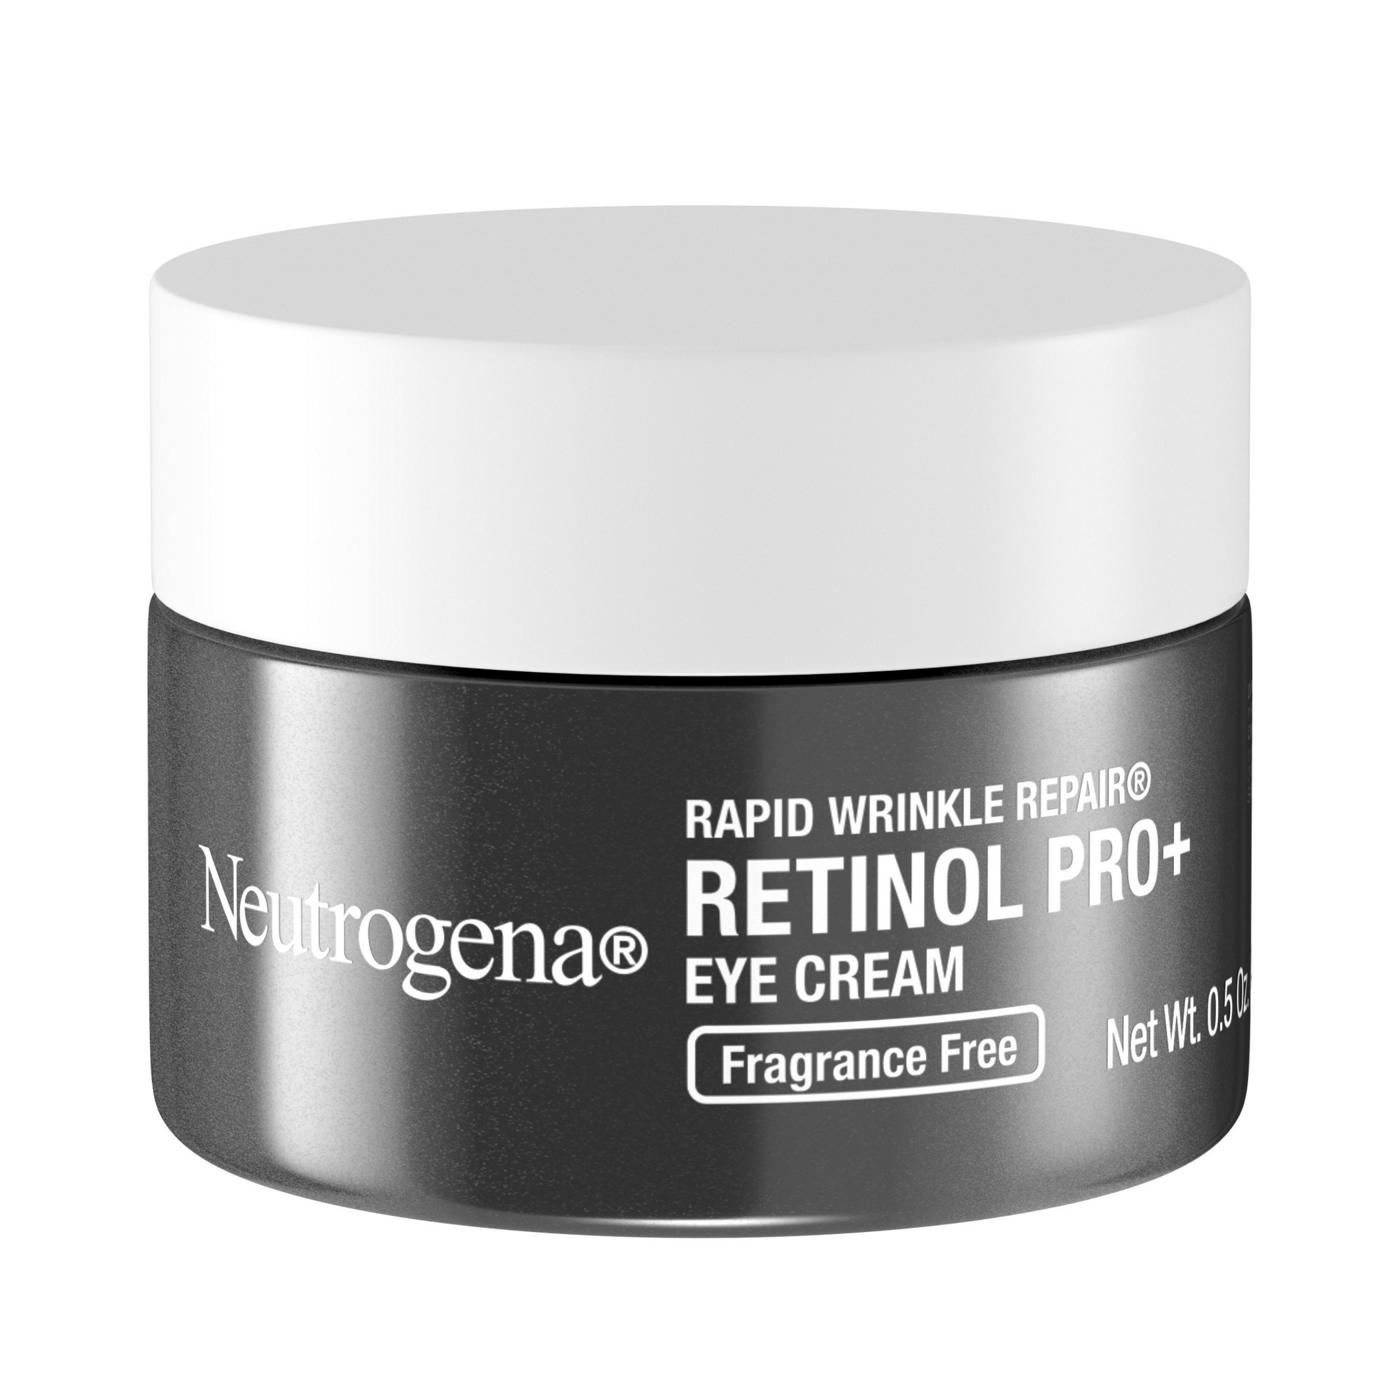 Neutrogena Rapid Wrinkle Repair Retinol Pro + Eye Cream; image 3 of 3